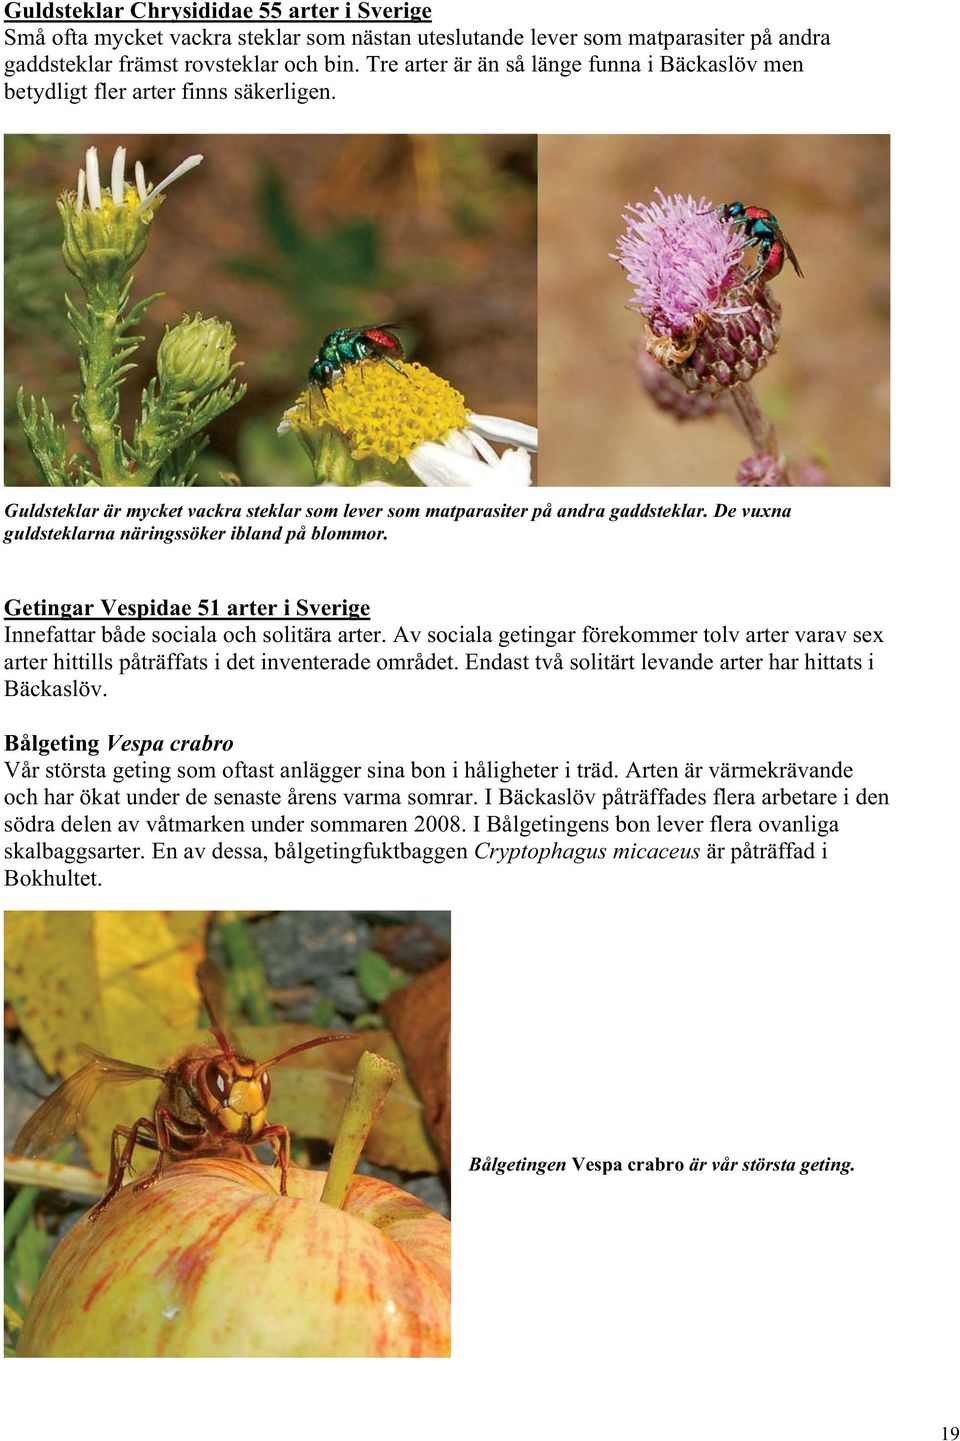 De vuxna guldsteklarna näringssöker ibland på blommor. Getingar Vespidae 51 arter i Sverige Innefattar både sociala och solitära arter.